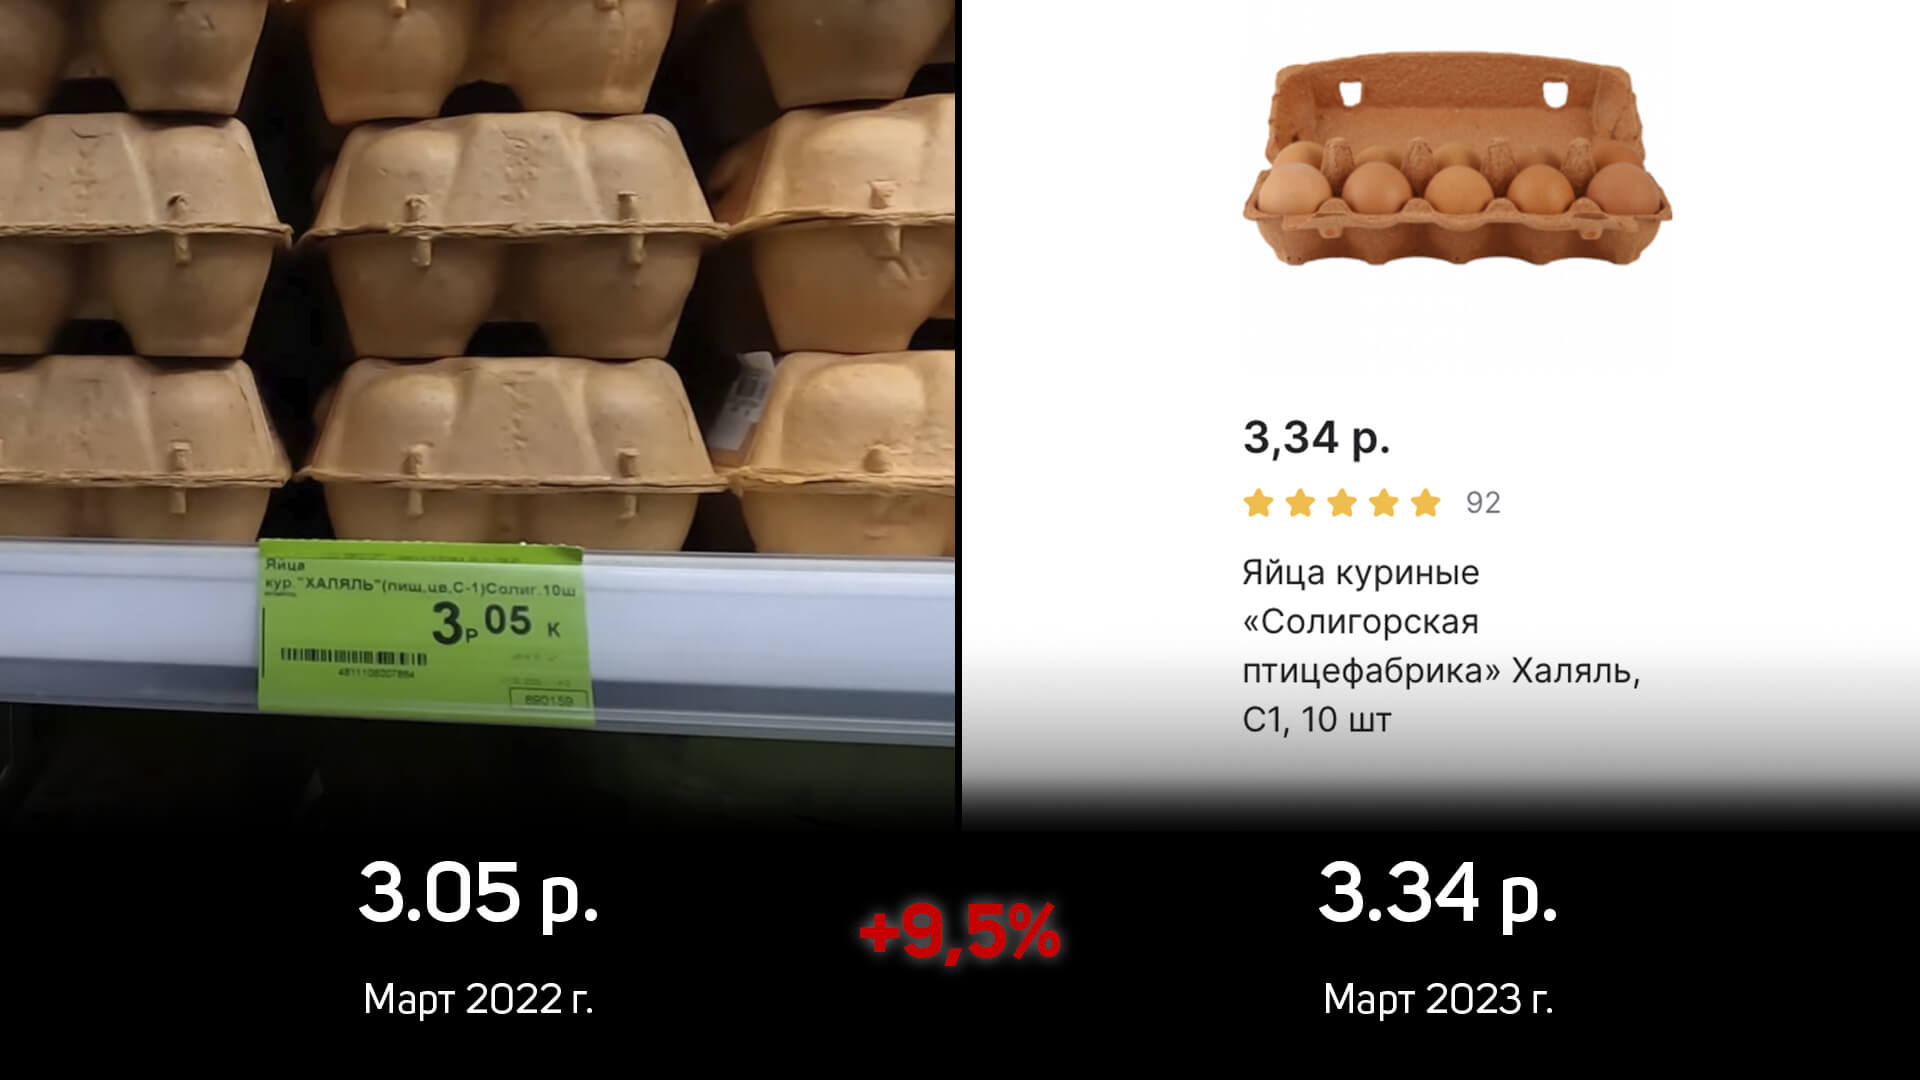 Анализ: Как изменились цены на продукты в Беларуси за 1 год?